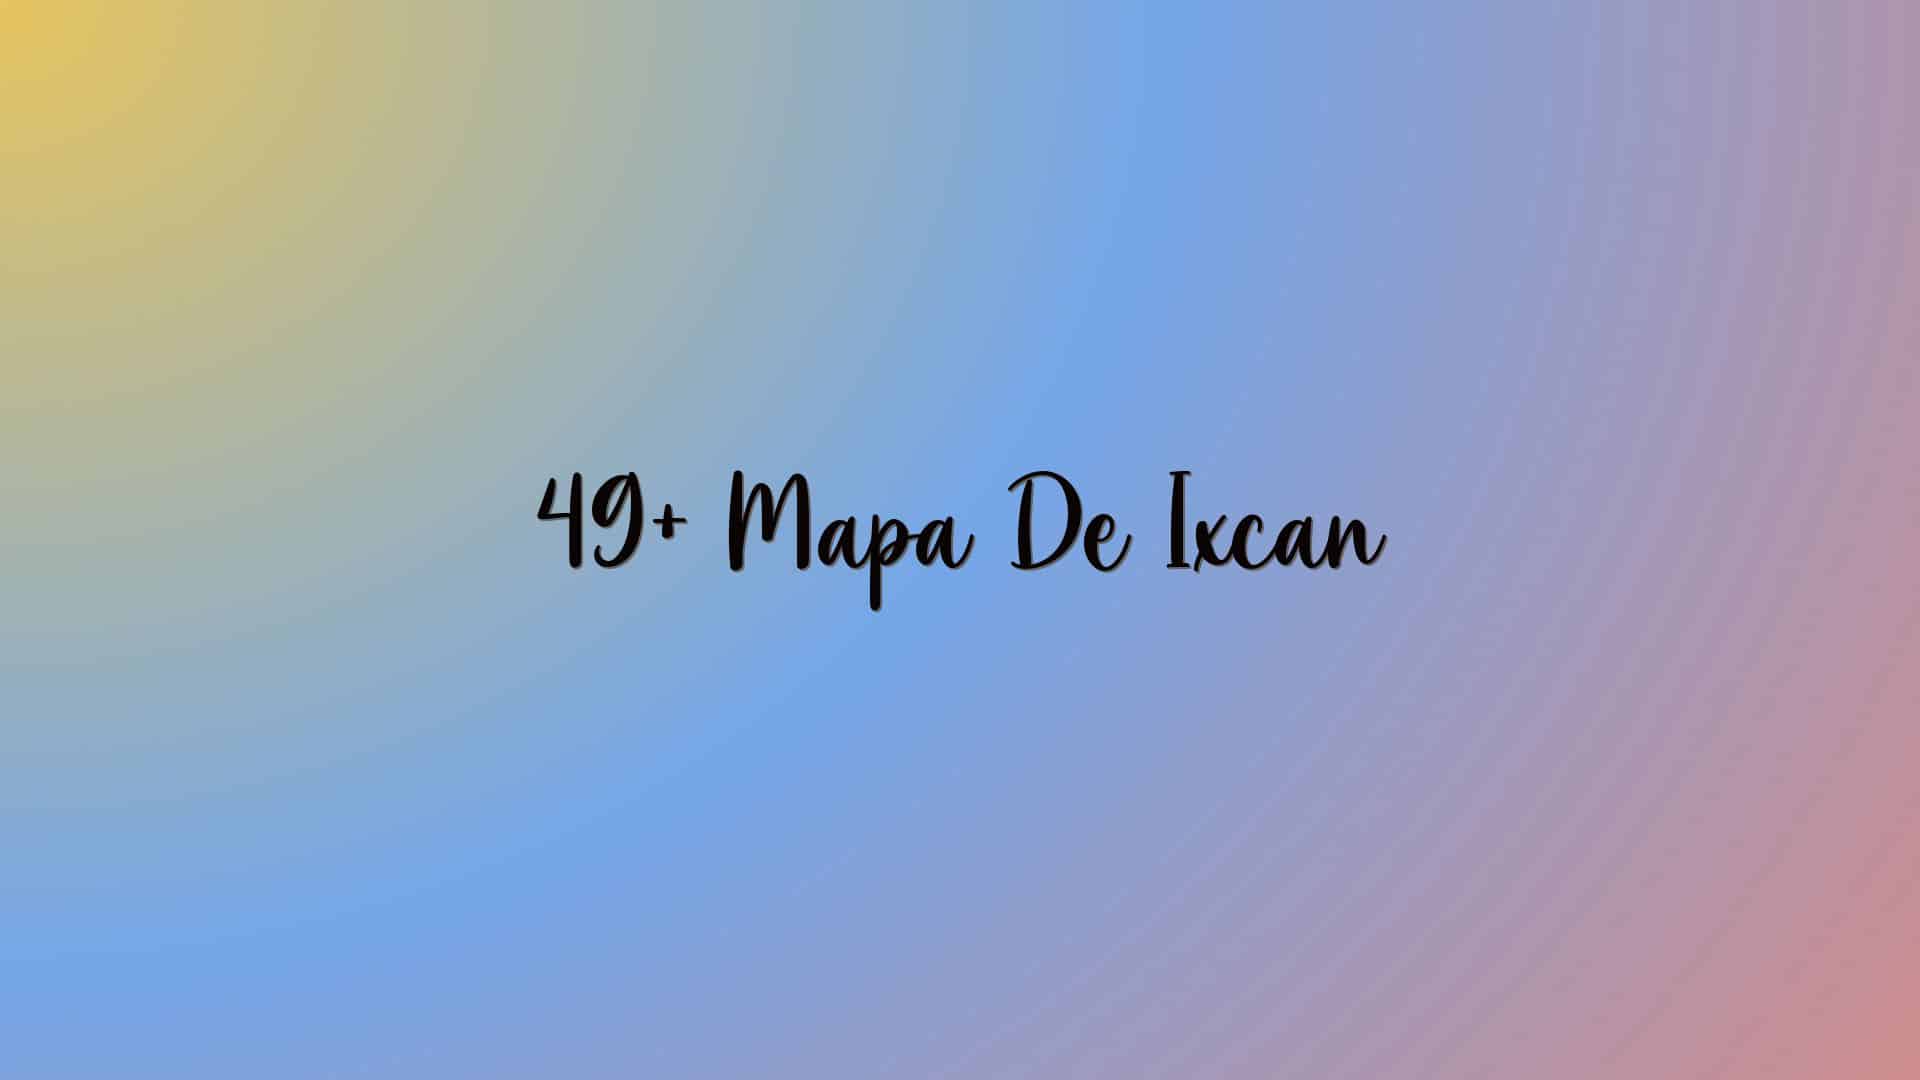 49+ Mapa De Ixcan